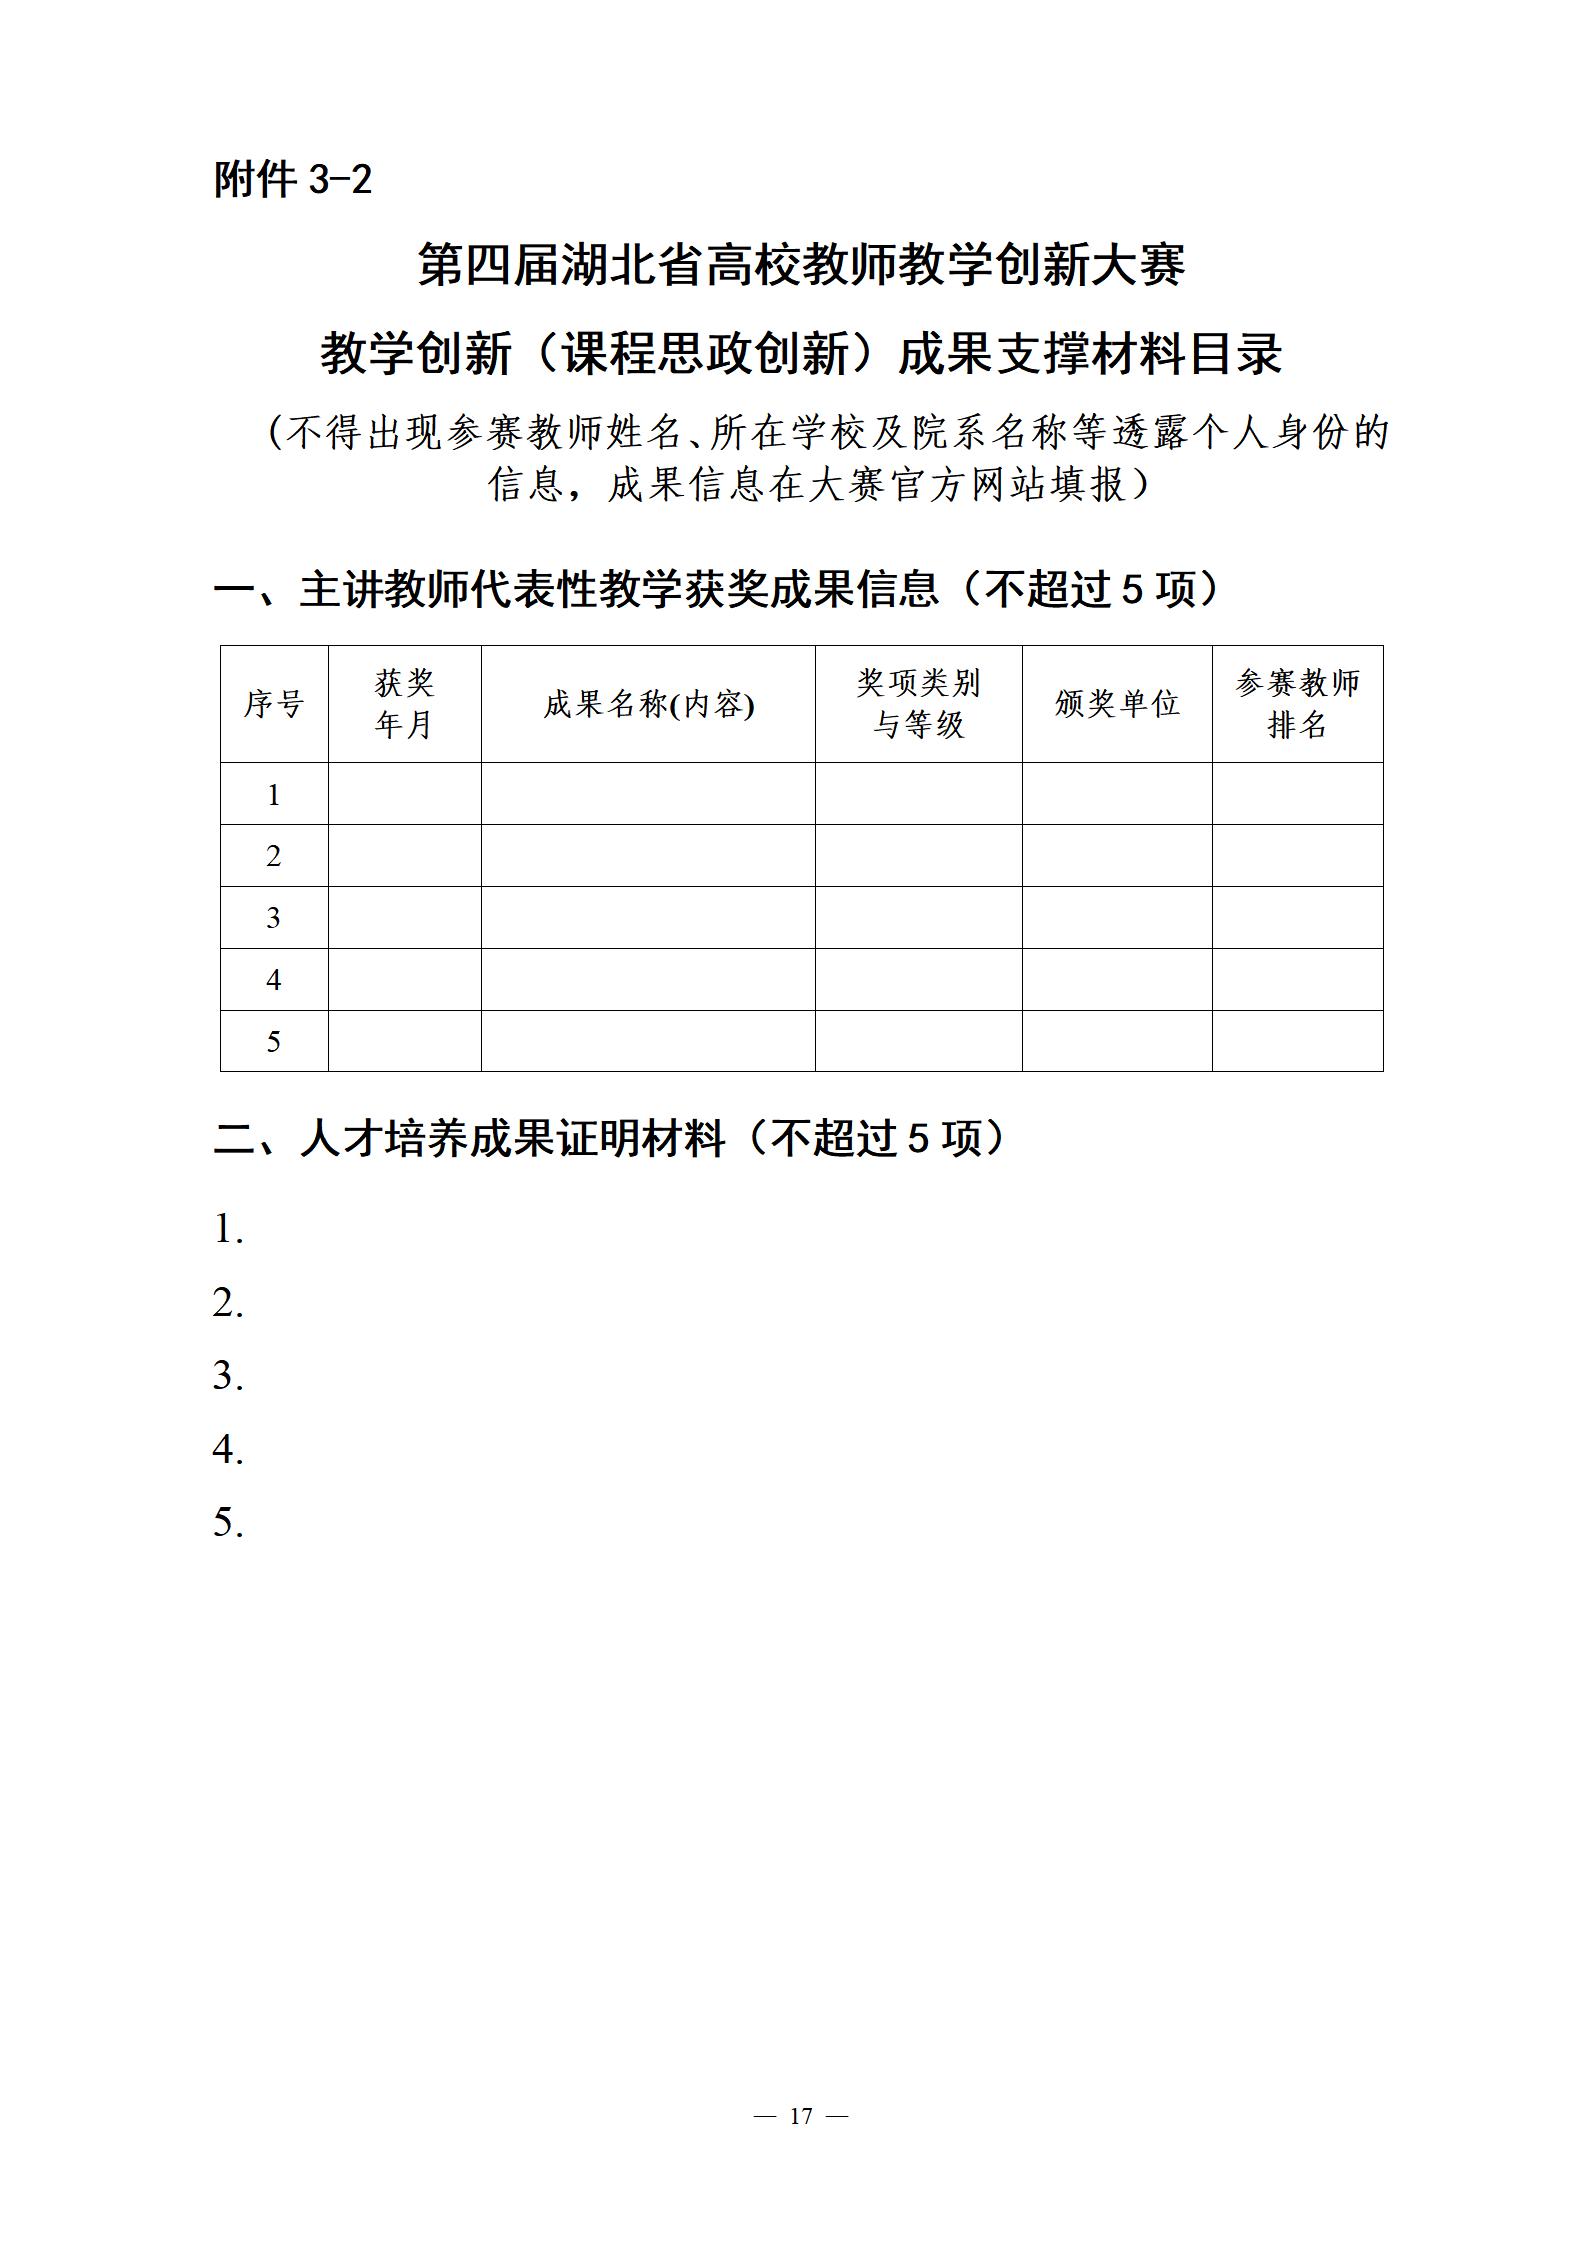 关于举办第四届湖北省高校教师教学创新大赛的通知_17.jpg